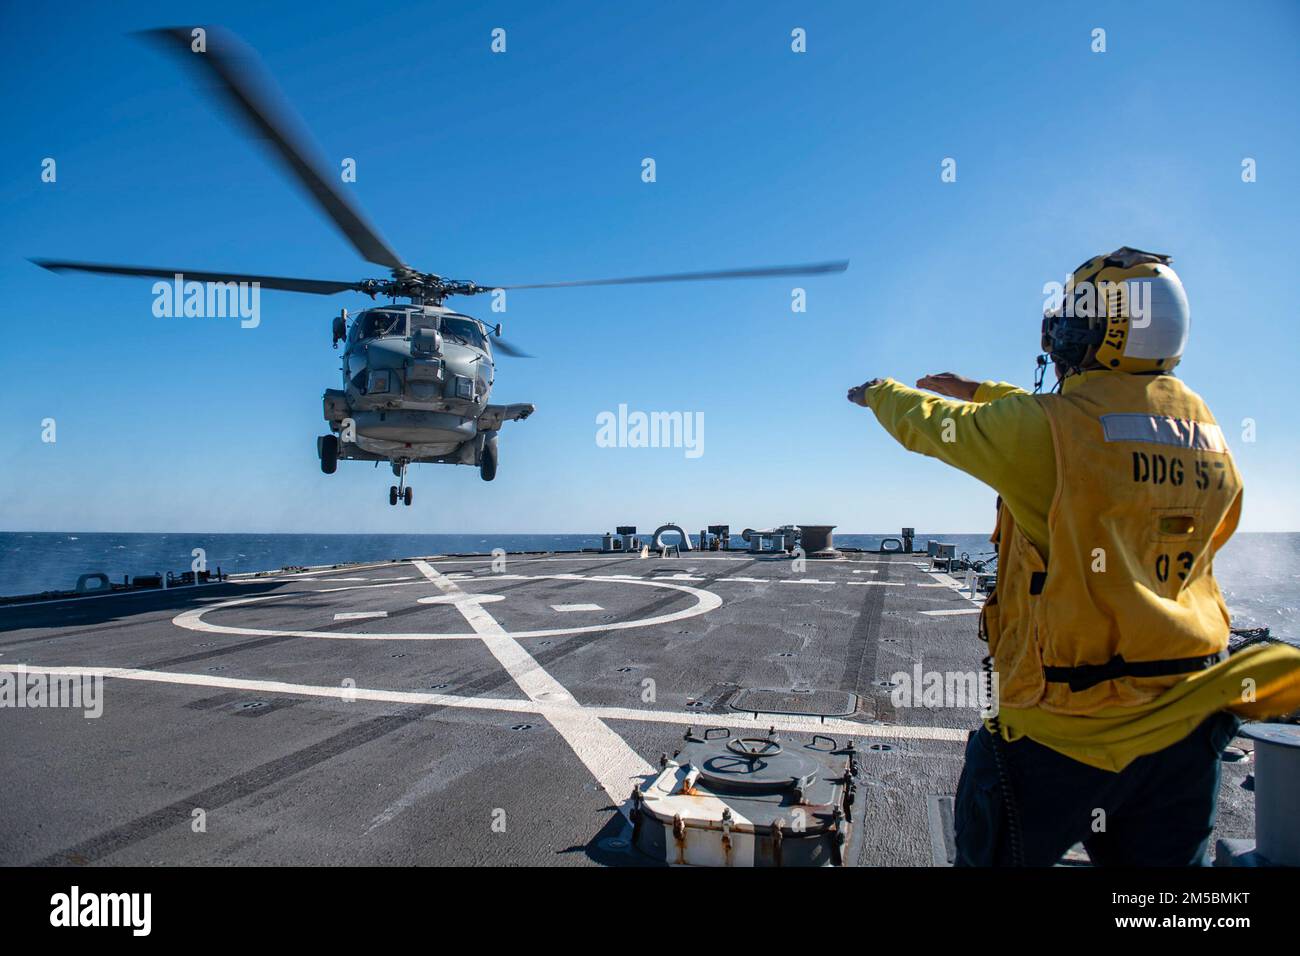 220223-N-HG846-1087 ADRIATISCHE SEE (23. Februar 2022) – Boatswain’s Mate 3. Class Tra'shaun Cooper, aus Homestead, Texas, leitet einen MH-60R Sea Hawk Helikopter, der den „Stolzen Kriegern“ des Helicopter Maritime Strike Squadron (HSM) 72 zugeteilt wurde, um an Bord der DG Argh Burke-Class Guided-Leischer, 23. Februar 57, Mitzerstörer, 2022. Mitscher wird mit der Harry S. Truman Carrier Strike Group zu einem geplanten Einsatz in den USA eingesetzt Sechster Flottenbereich zur Unterstützung der Interessen der USA, Verbündeten und Partner in Europa und Afrika. Stockfoto